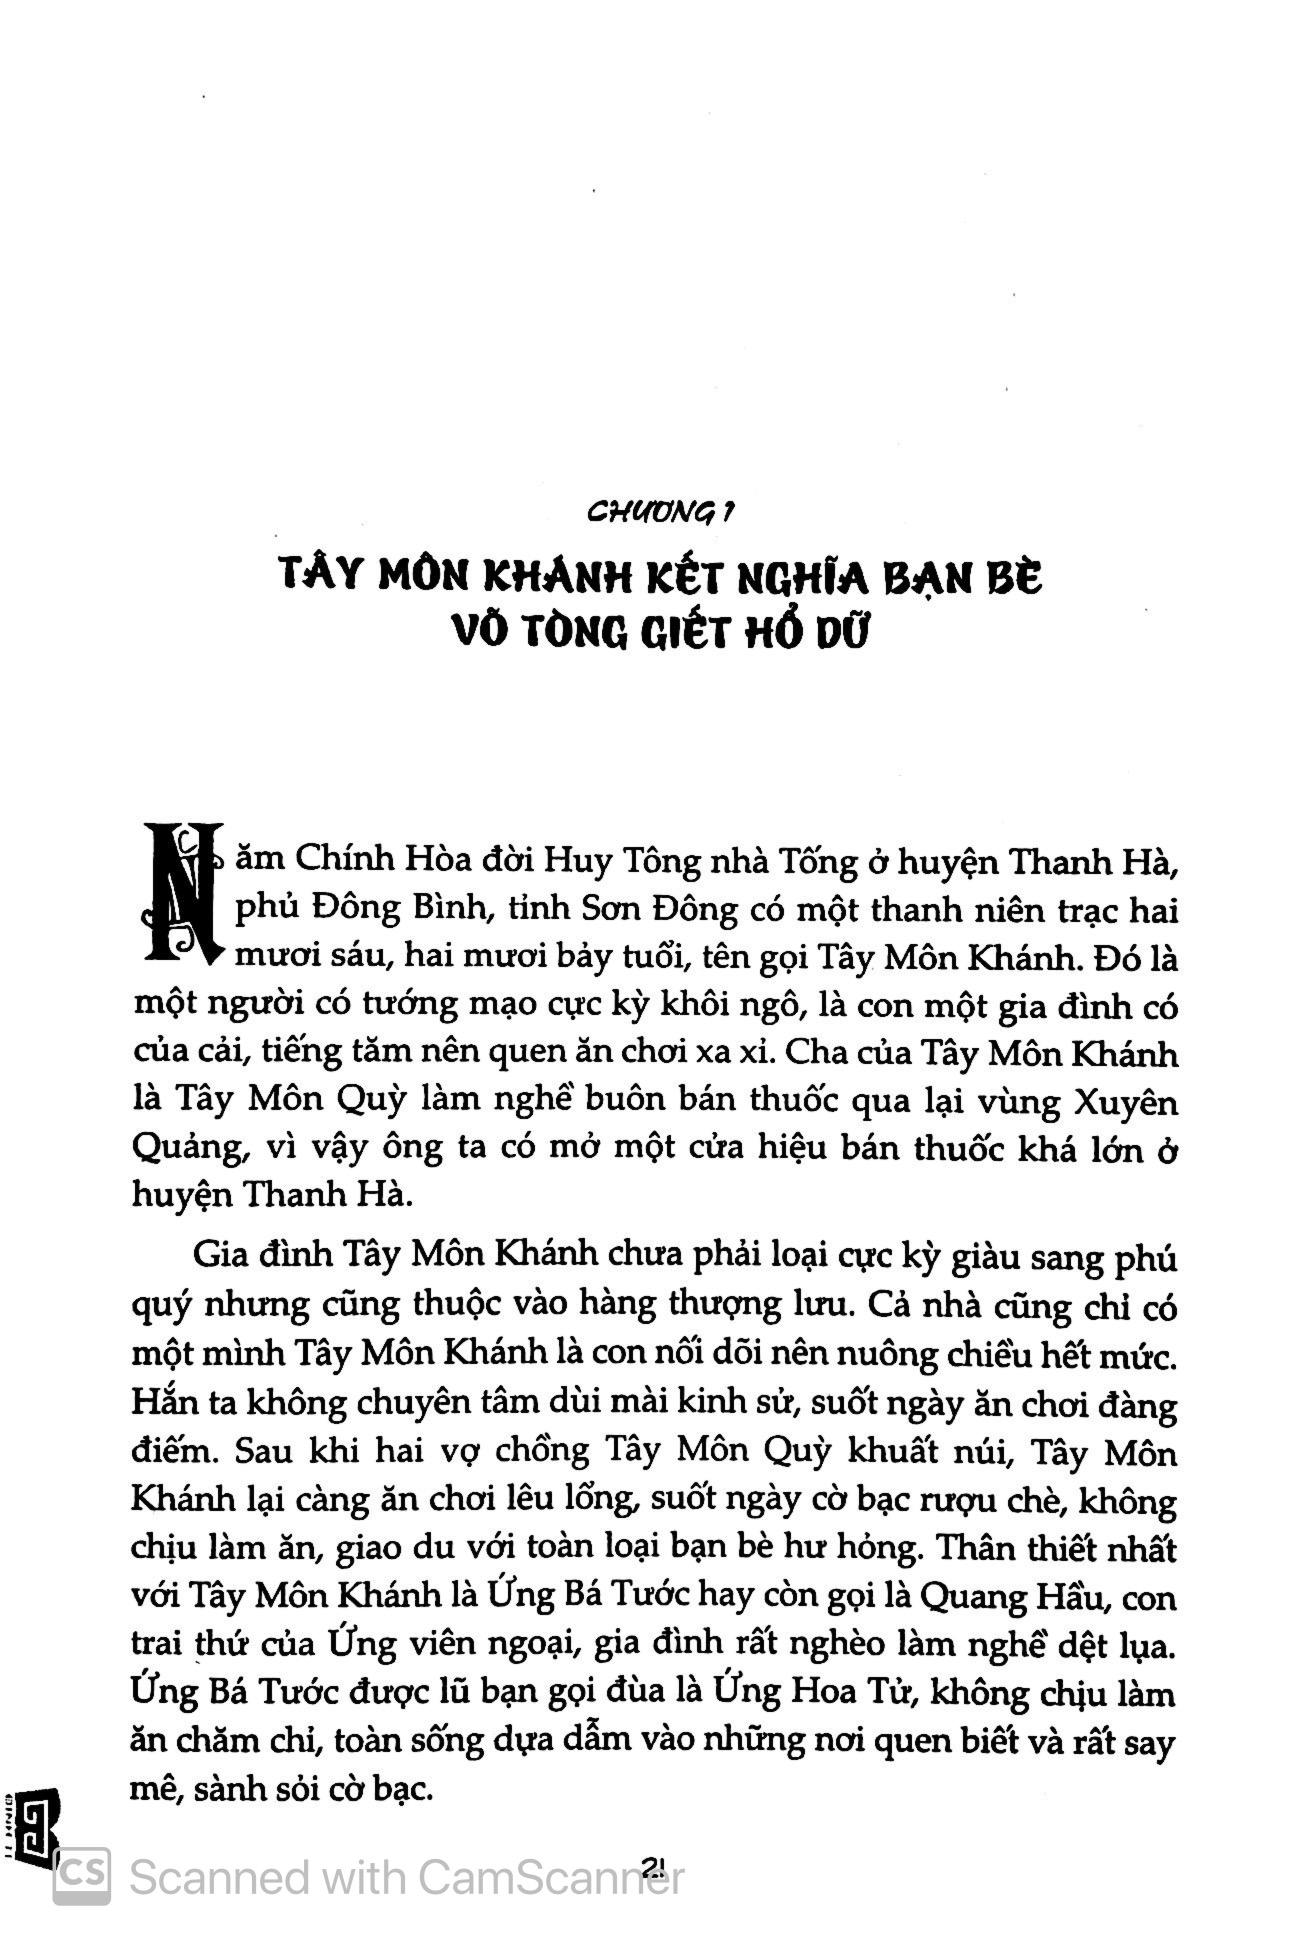 Kim Bình Mai Tập 1 PDF